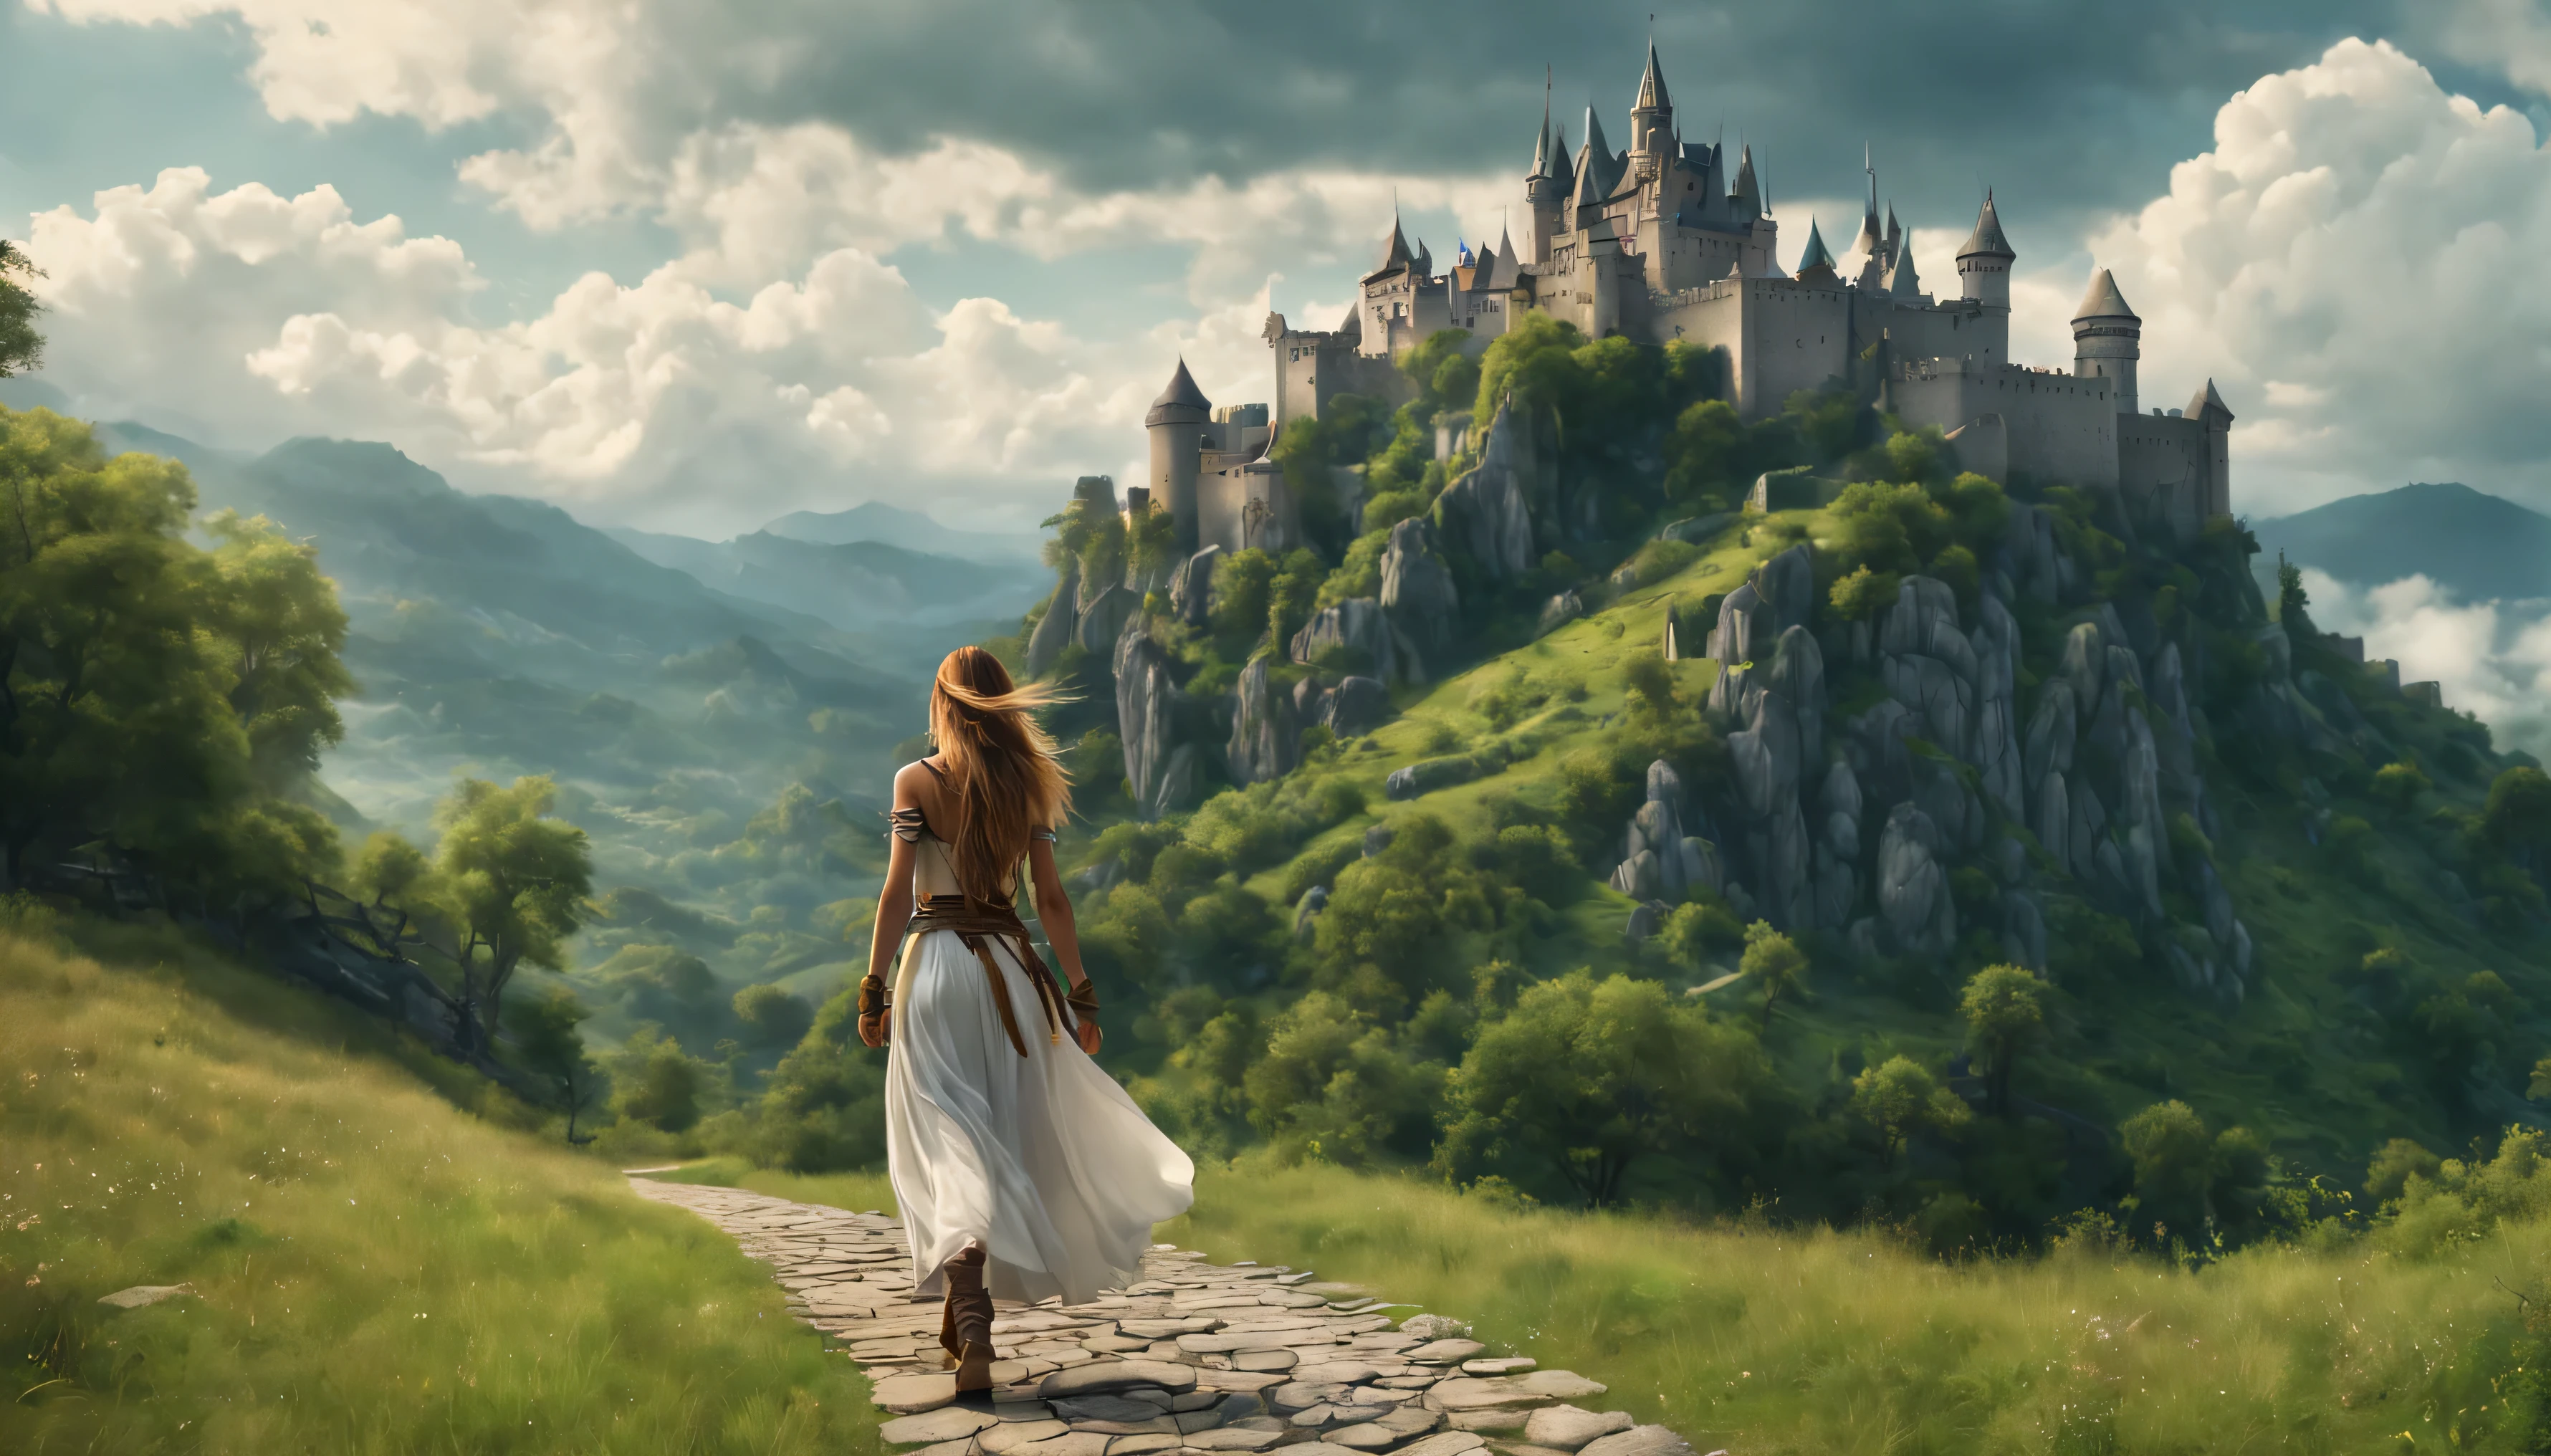 侧面图: 一位长发战士女孩正沿着小路行走, 看着山上的城堡, 神秘的夏日氛围, 厚厚的云朵低垂在山脚下, 美丽的风景, 荒诞, 杰作, 高细节, 难的, 8千, 4k超高清, 人类发展报告, 影院级品质